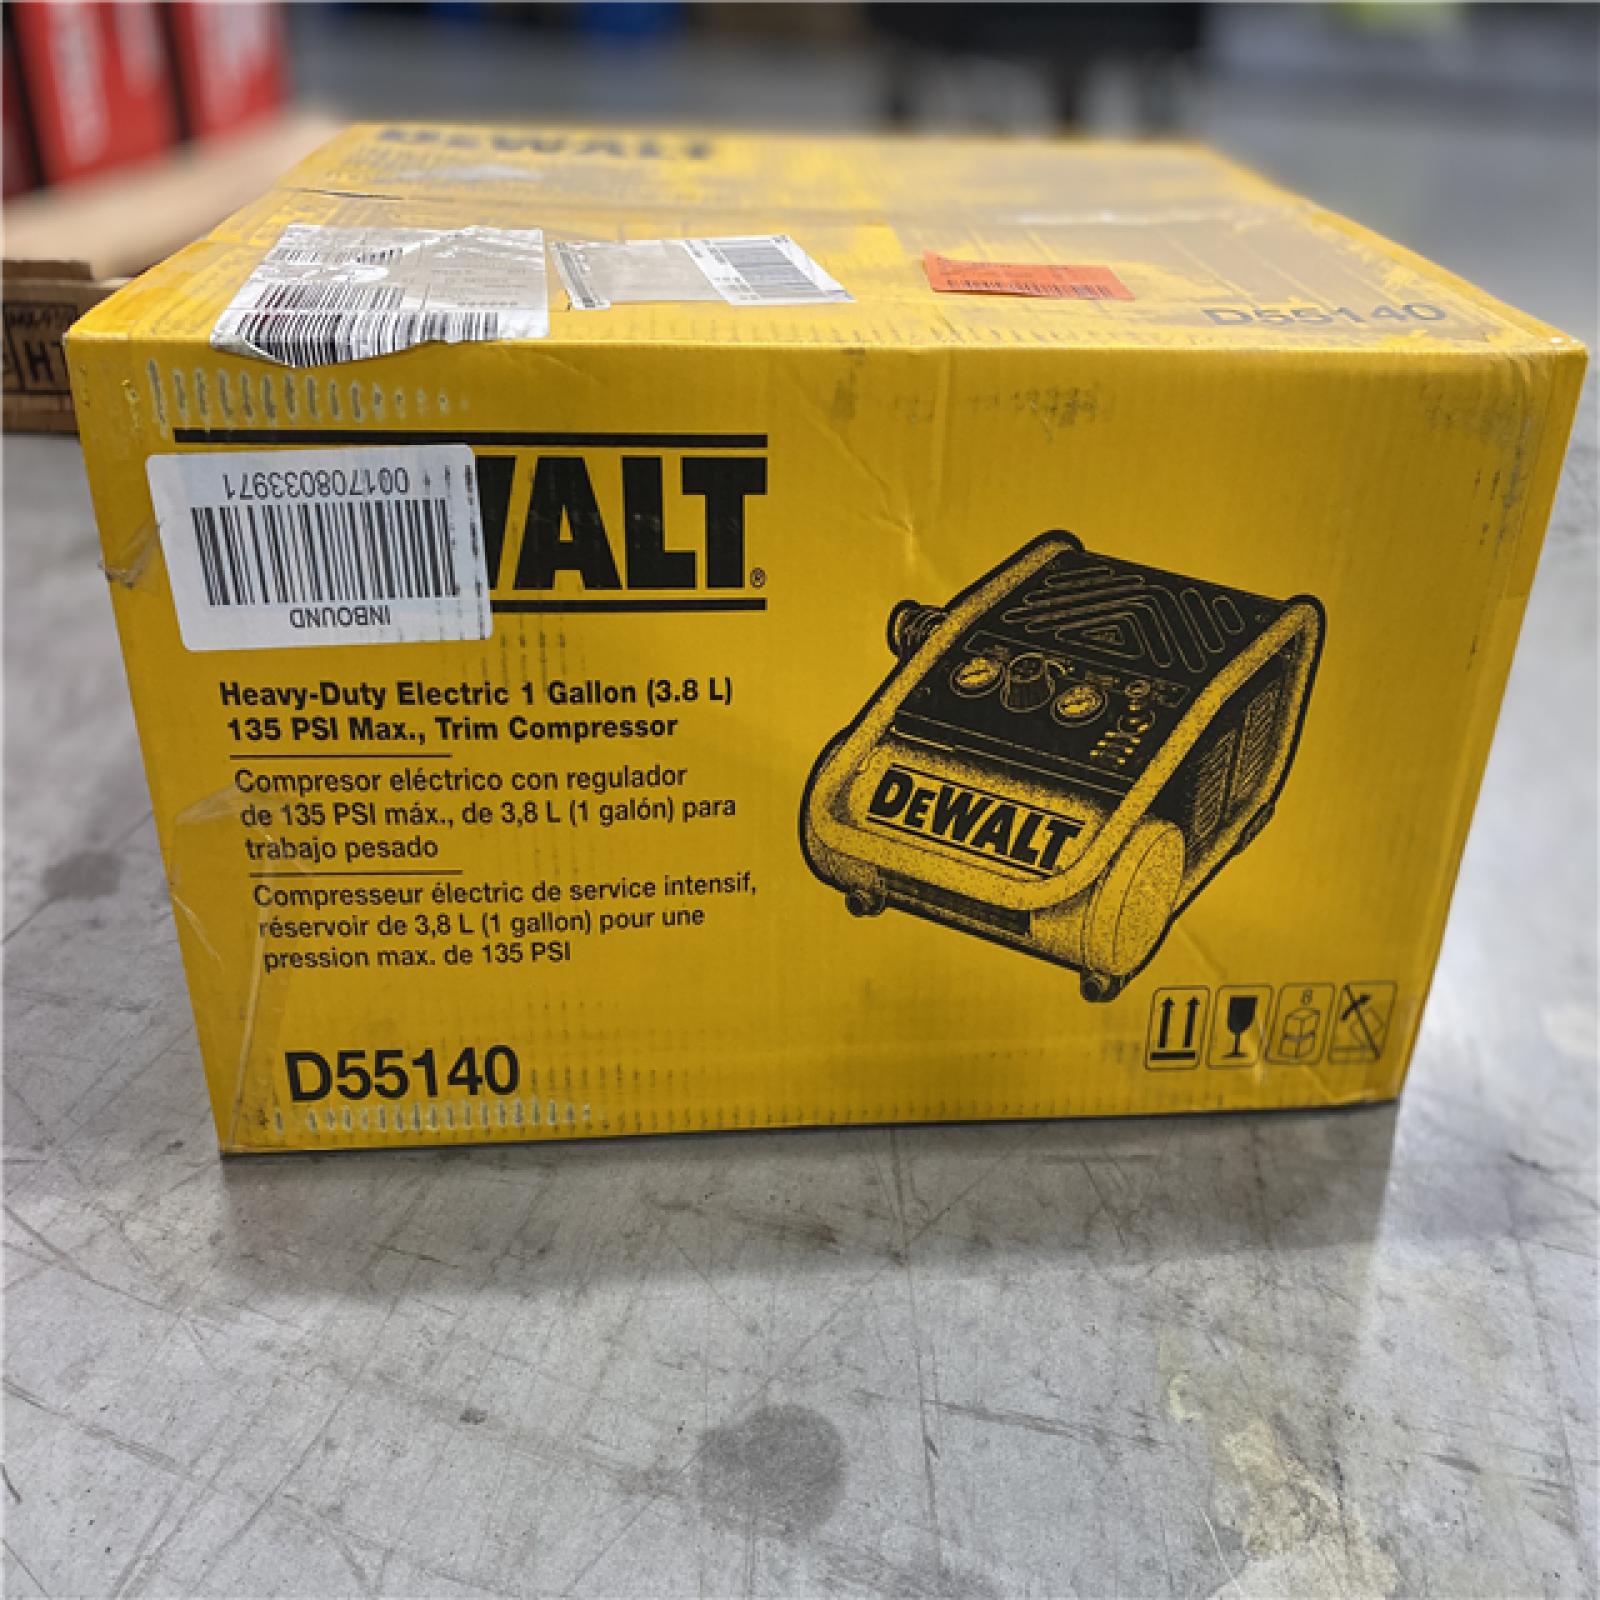 NEW! - DEWALT 1 Gal. Portable Electric Trim Air Compressor